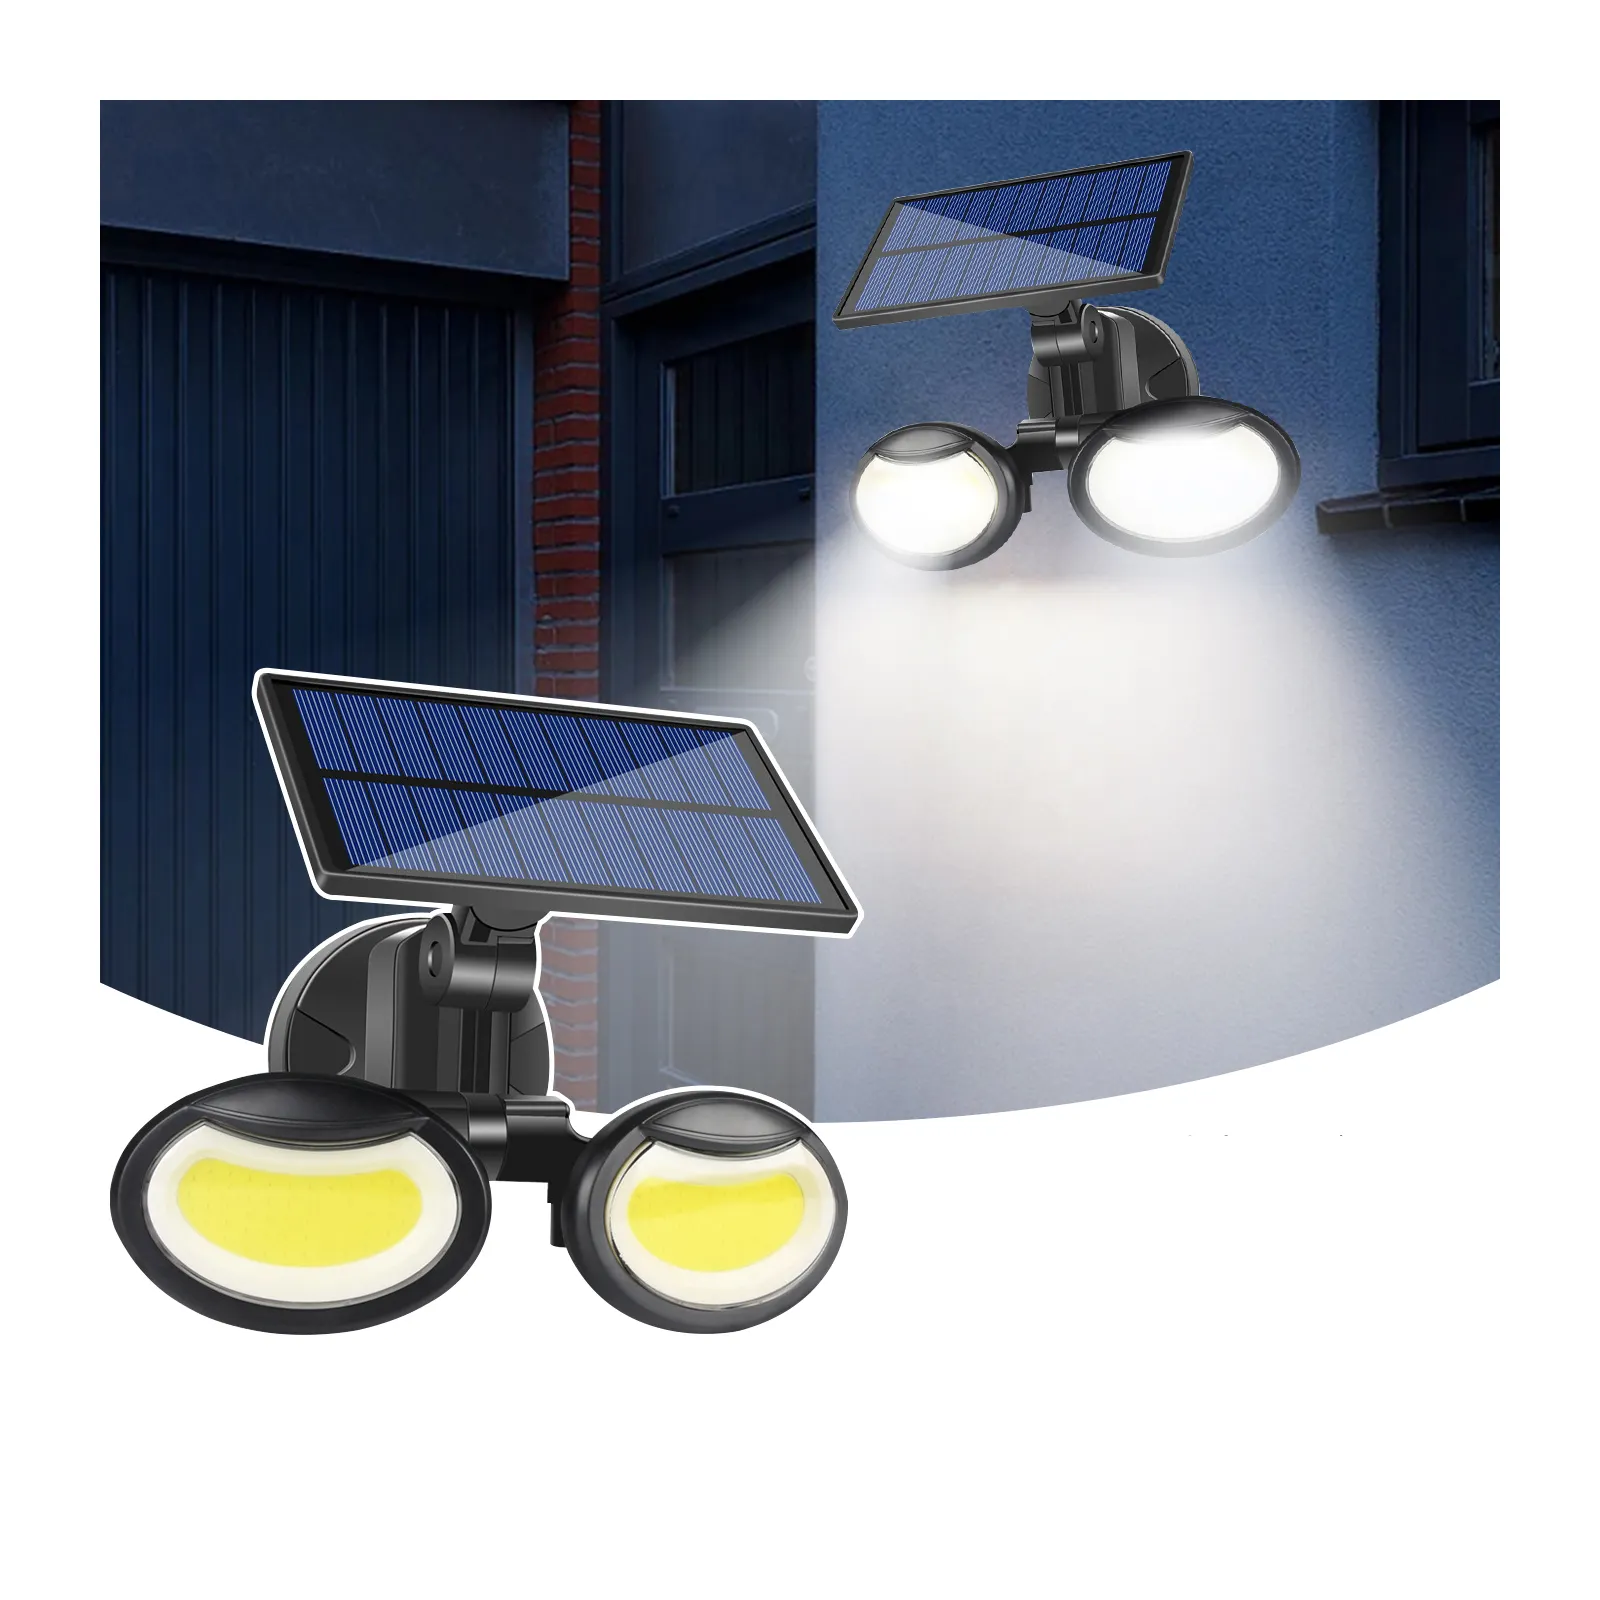 Orlite 108 COB LED luci solari per giardino cortile Garage IP65 impermeabile PIR sensore di movimento Patio luci da parete di sicurezza